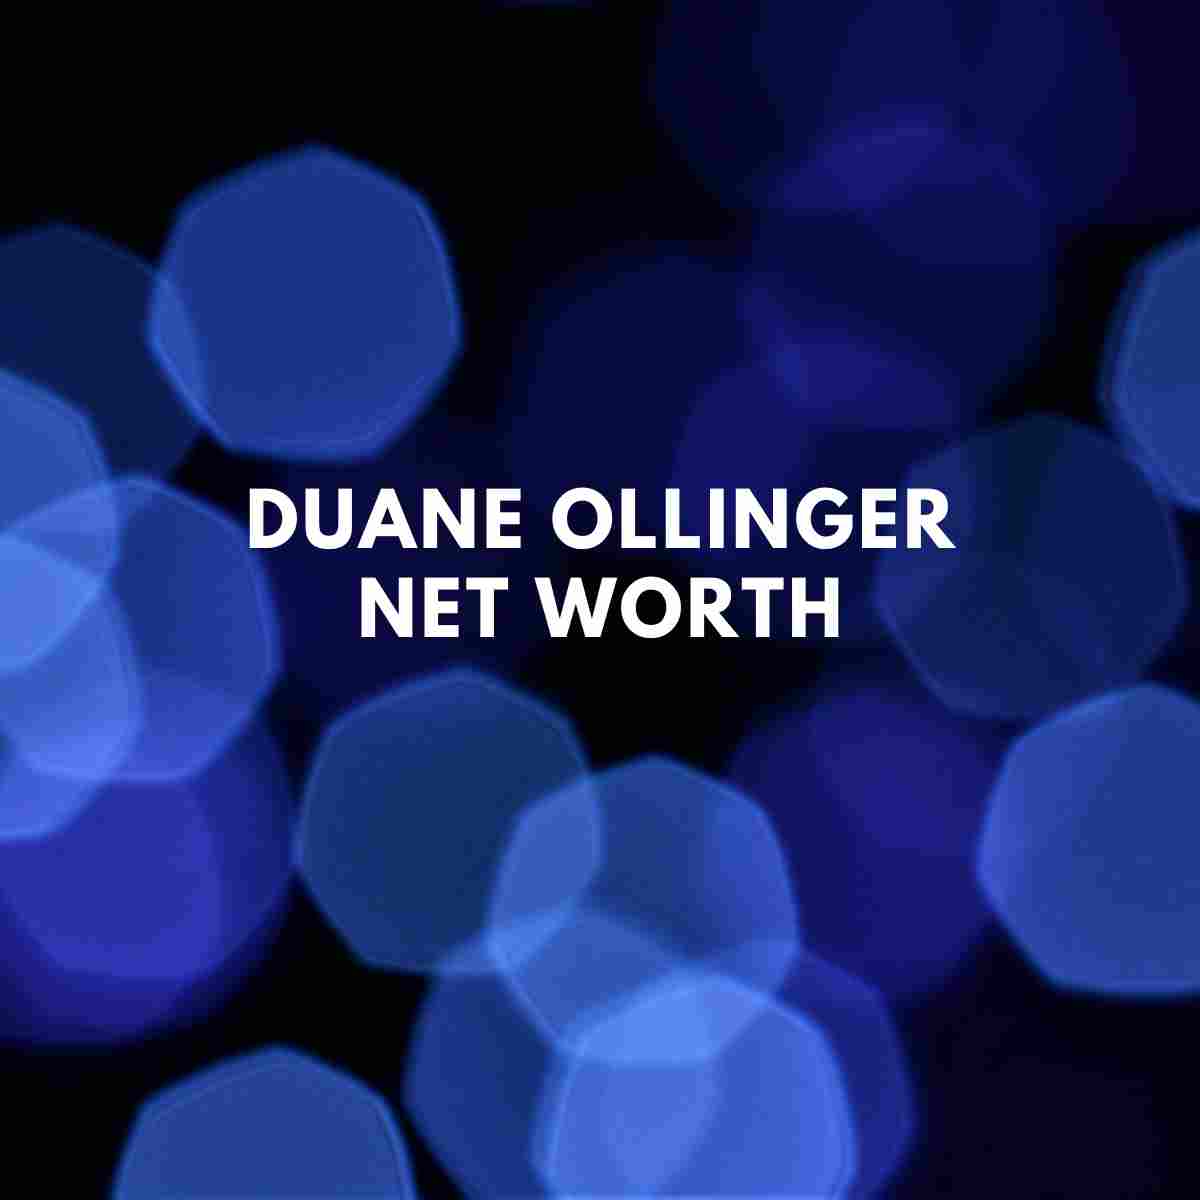 Duane Ollinger net worth